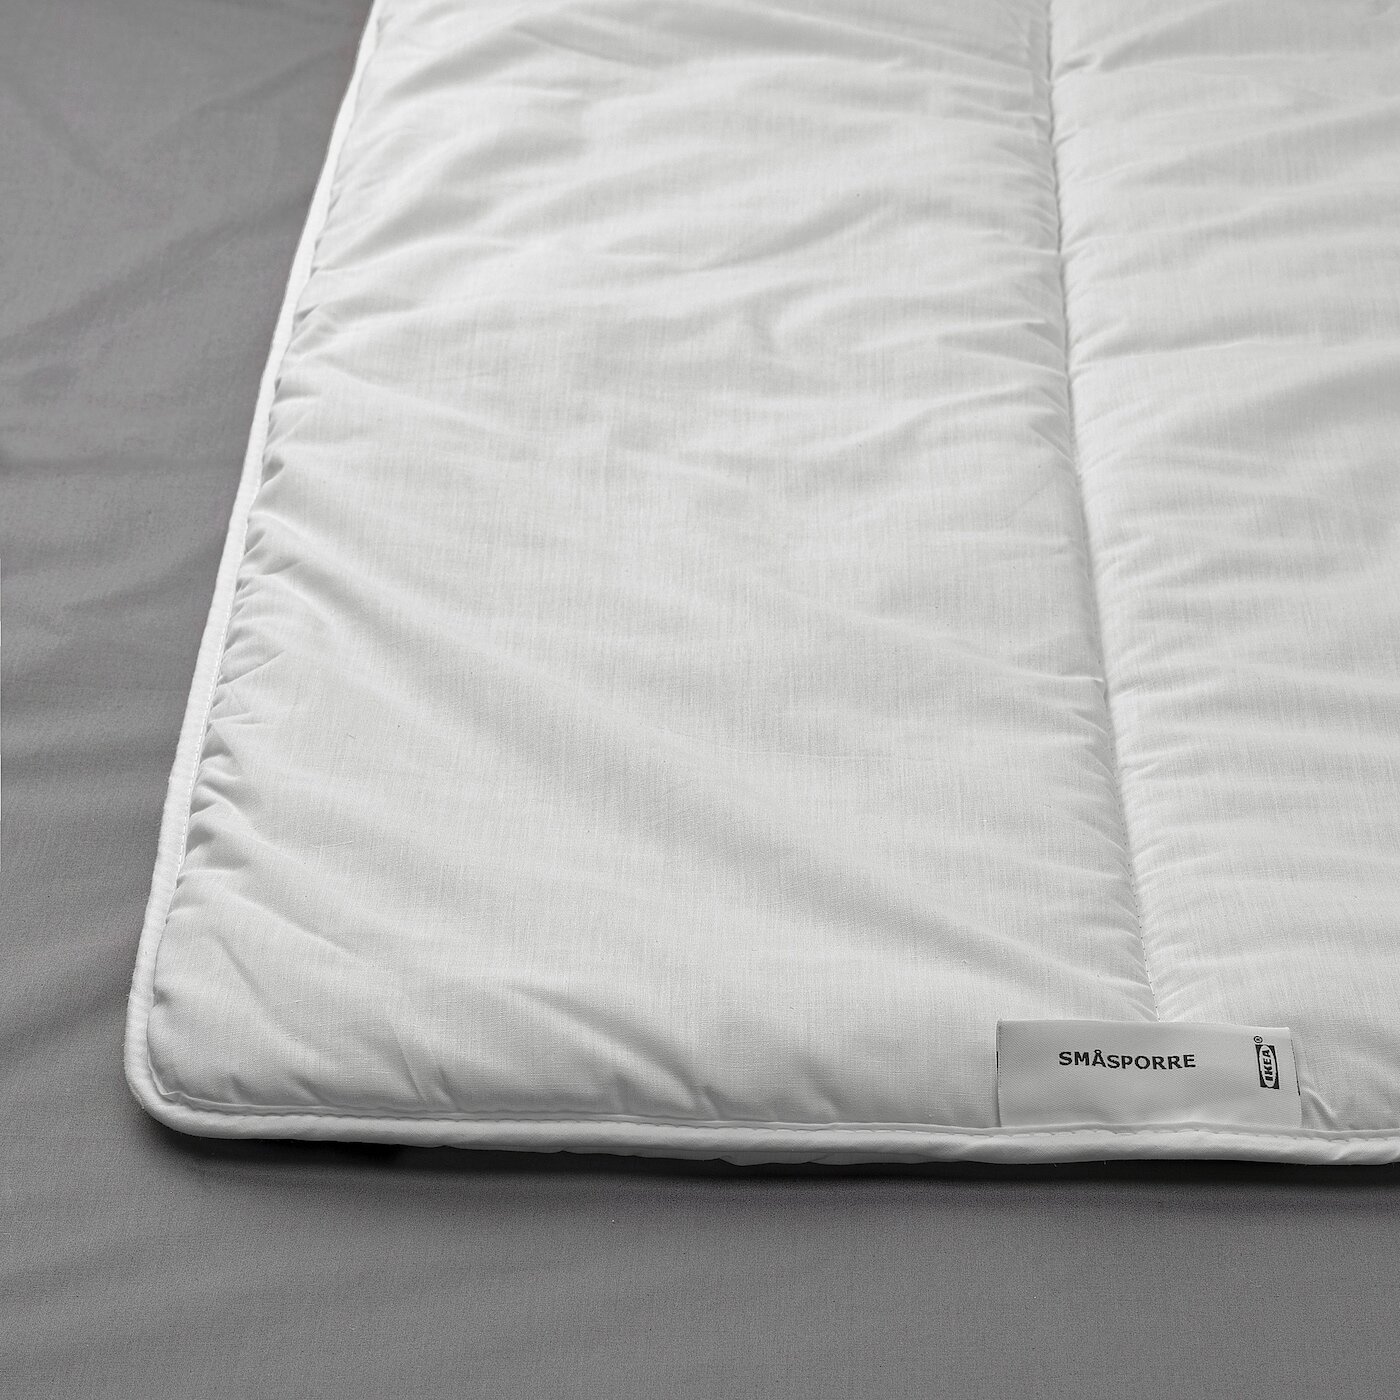 Одеяло стеганное полутороспальное легкое смоспорре, 150x200 см - фотография № 3